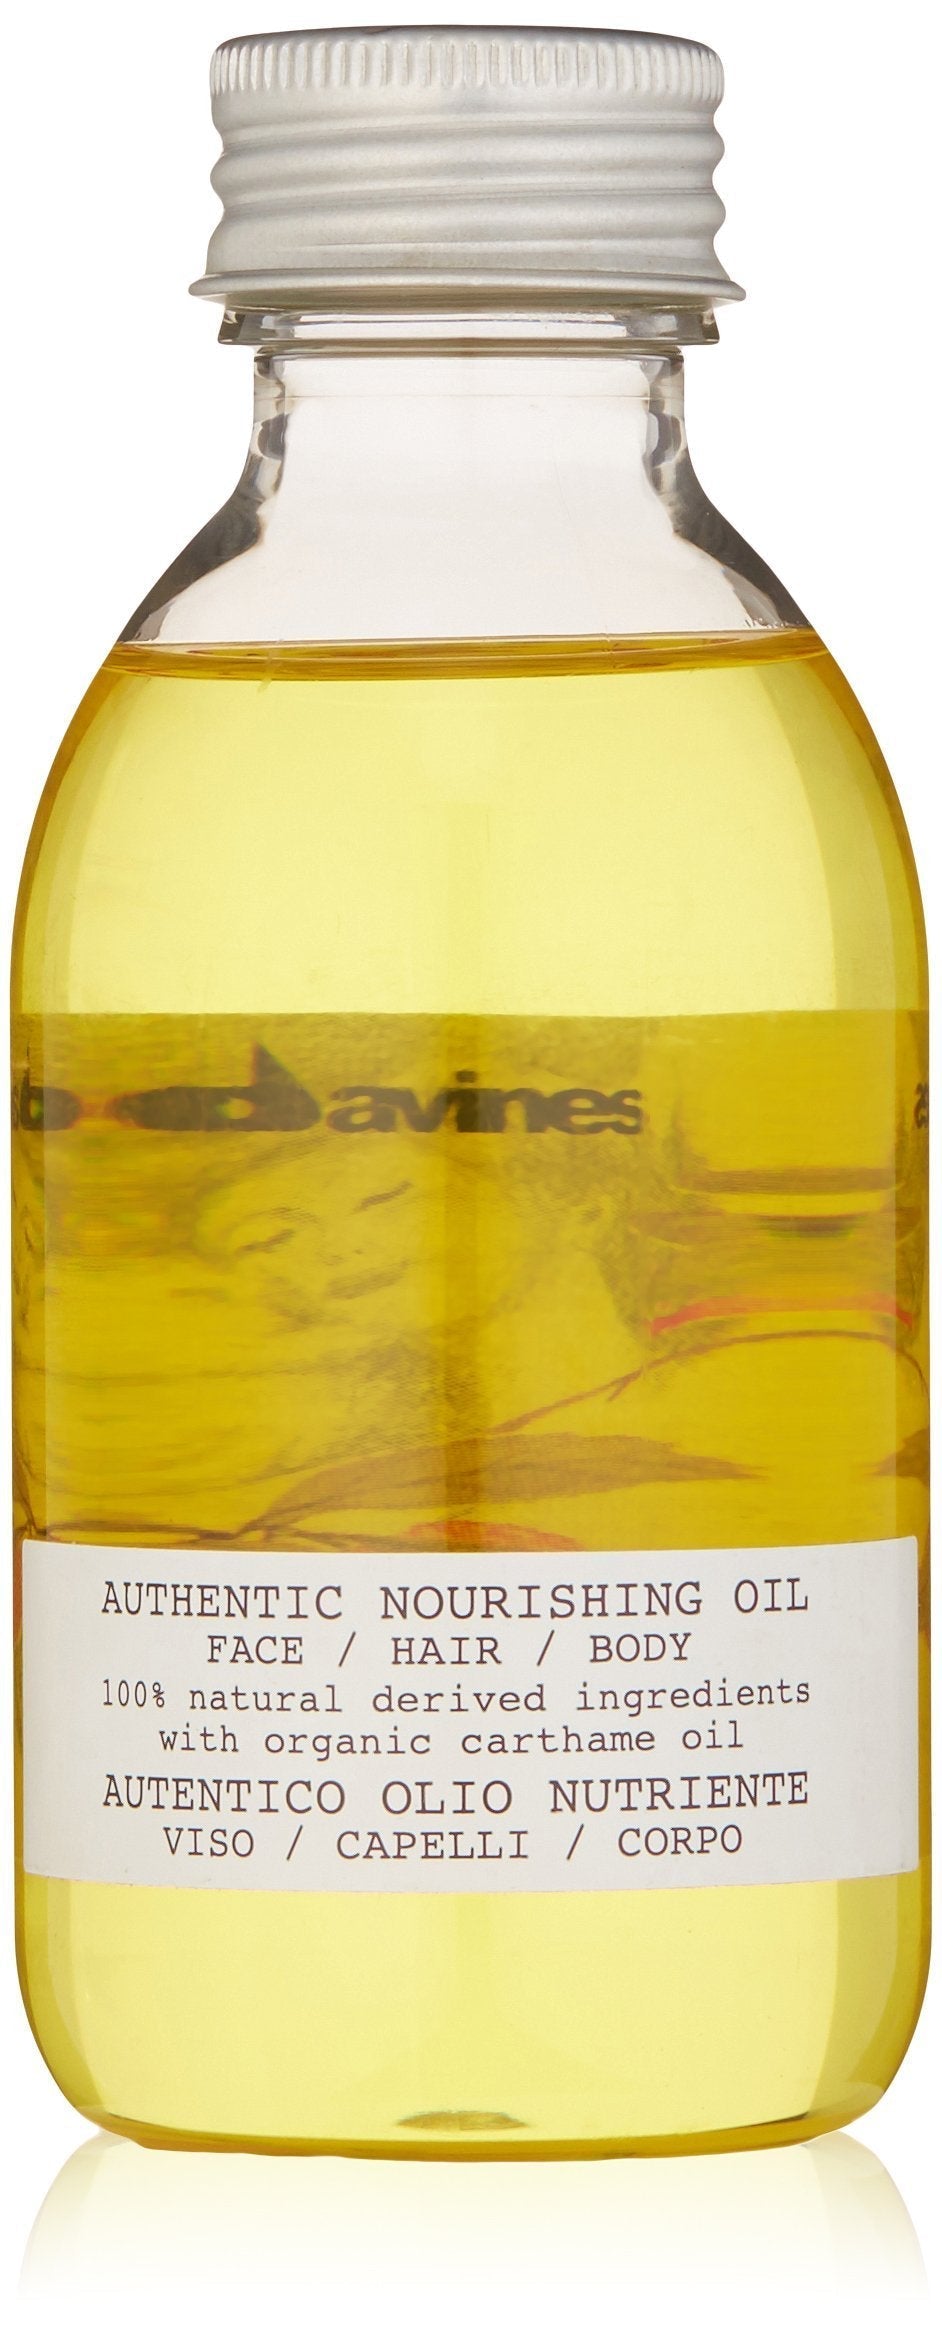 [Australia] - Davines Authentic Nourishing Oil, 4.73 Fl Oz 